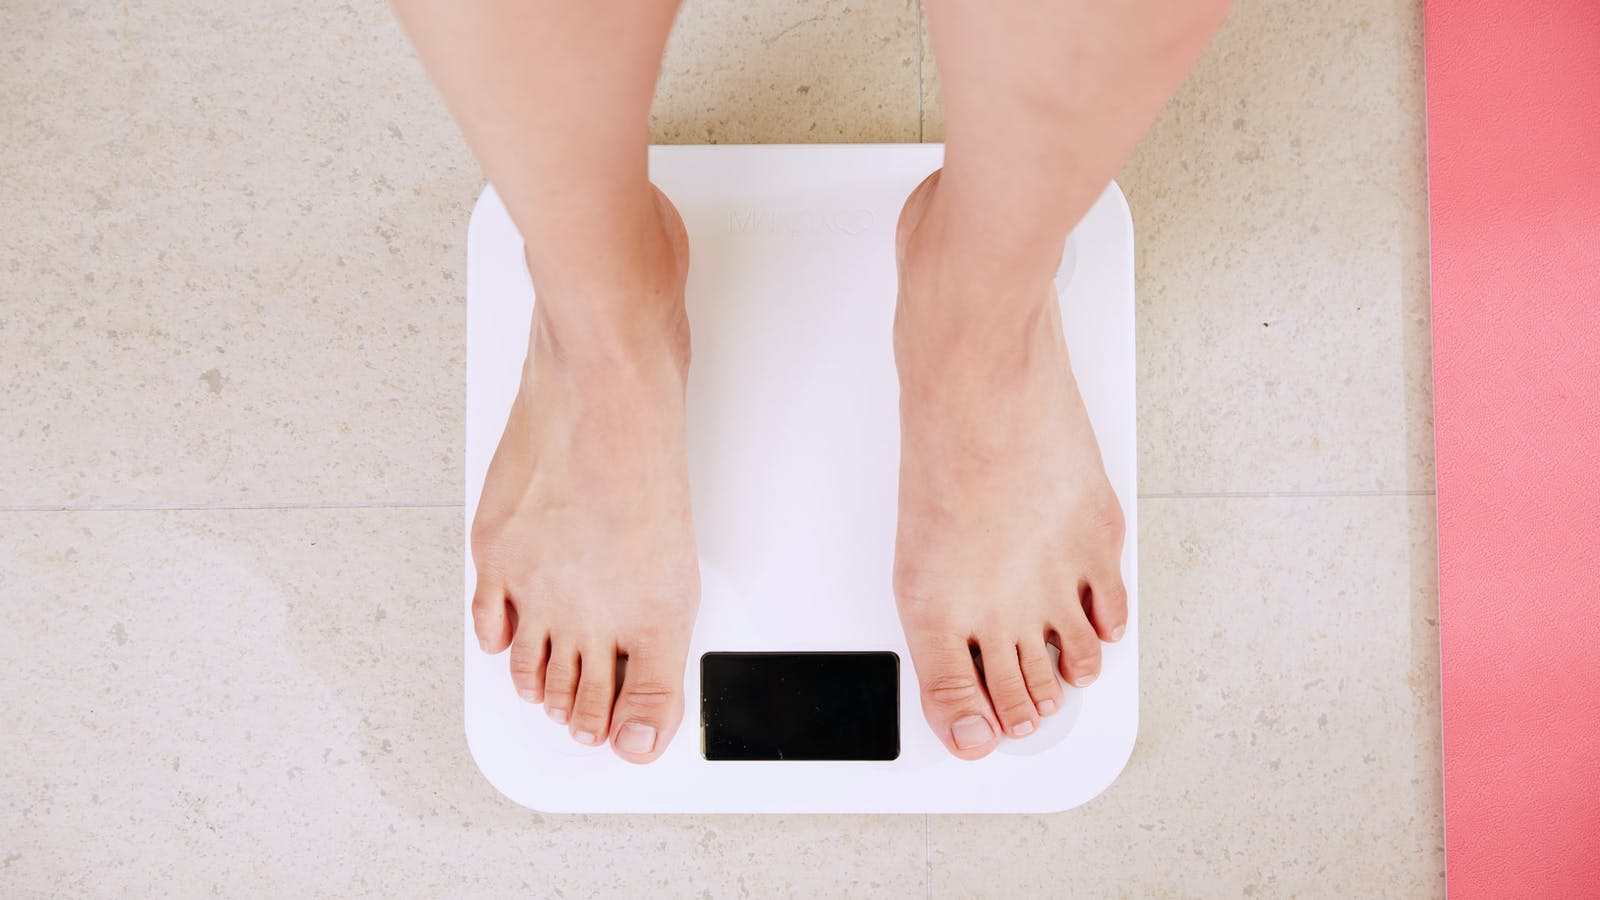 Accompagnement psychologique à la perte de poids 